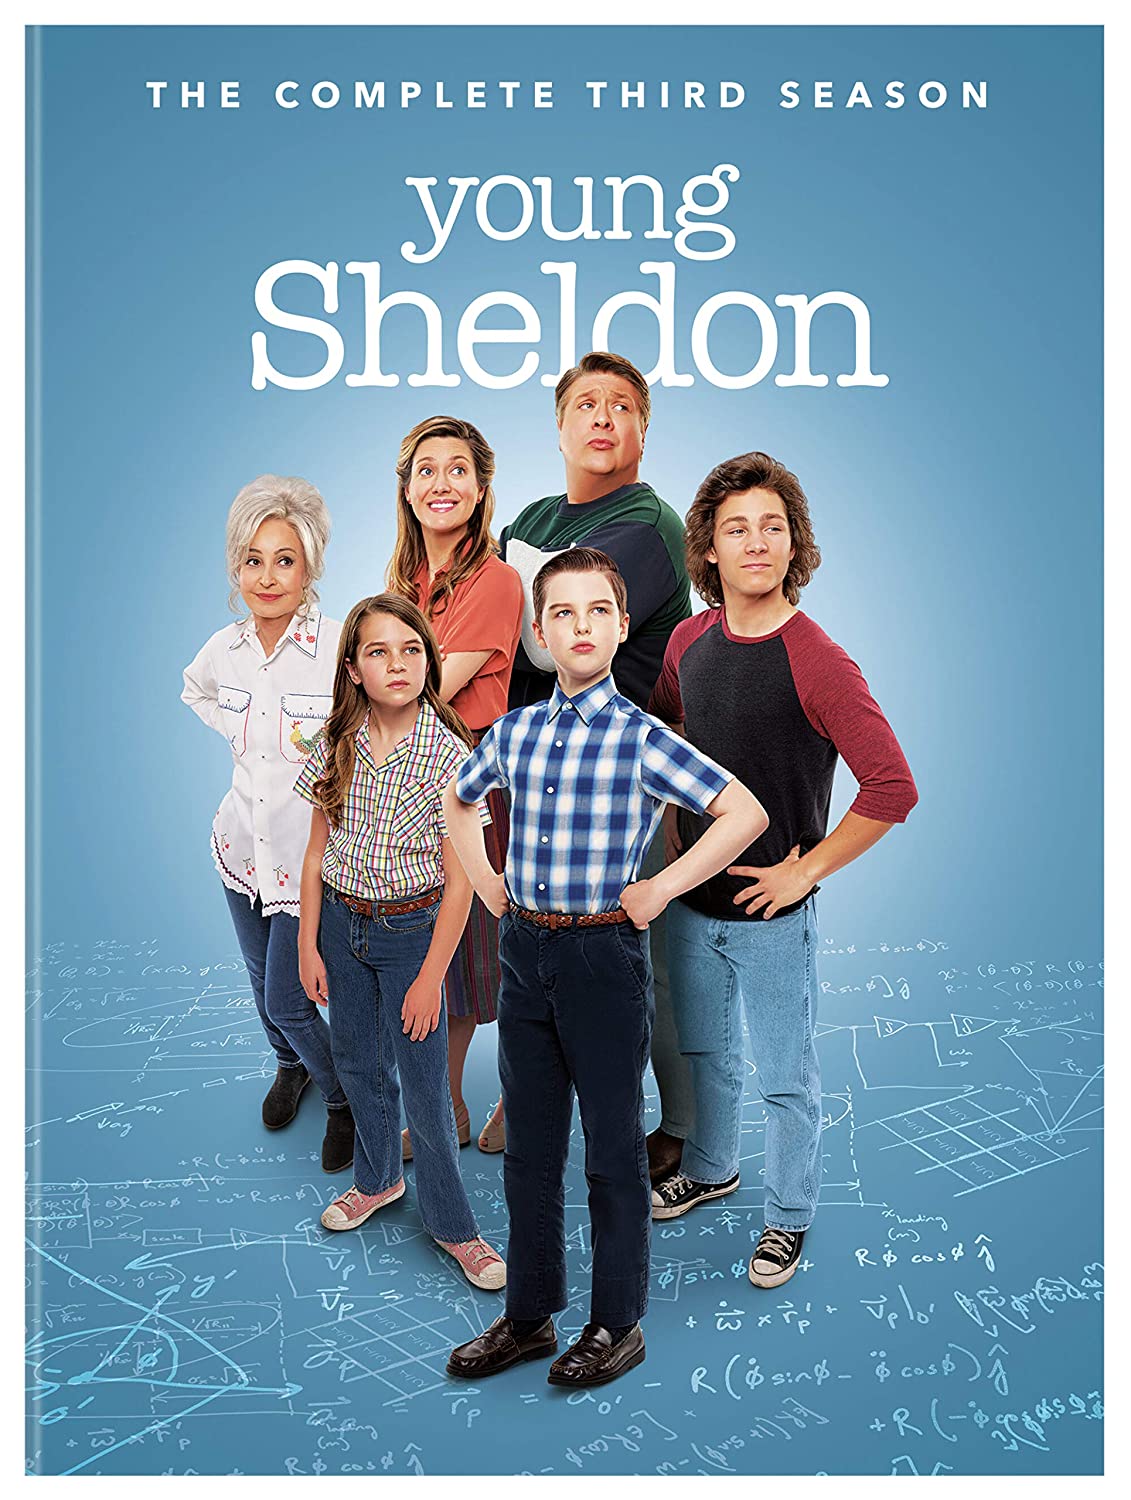 Index of Young Sheldon Season 3